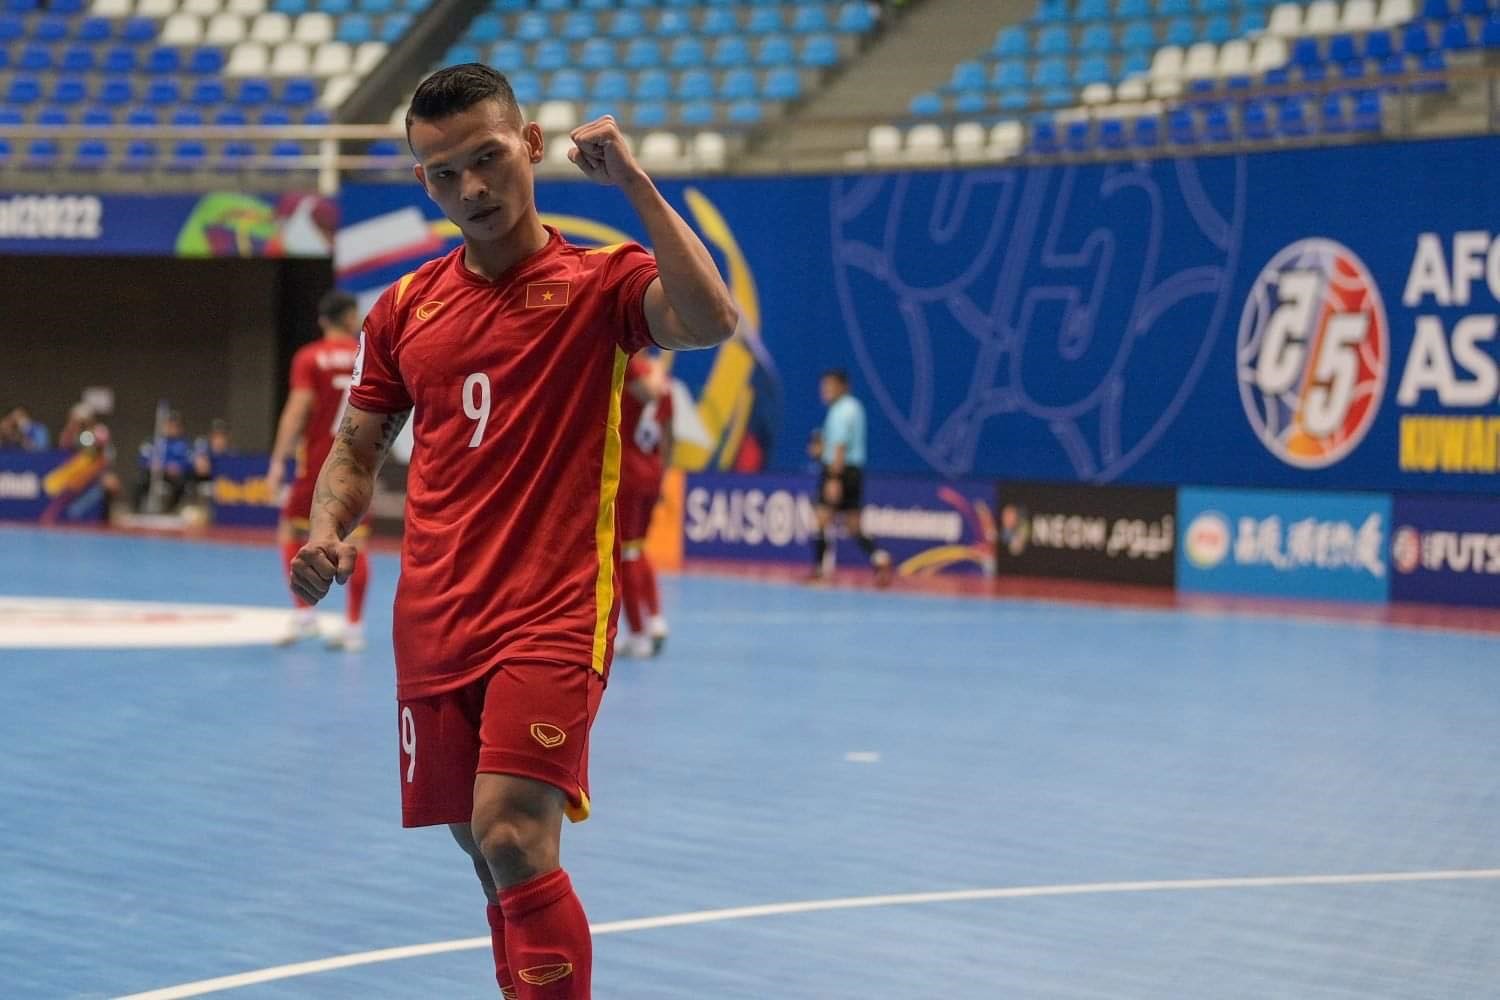 Thắng đậm Hàn Quốc 5-1, tuyển futsal Việt Nam mở màn thuận lợi tại giải futsal Châu Á